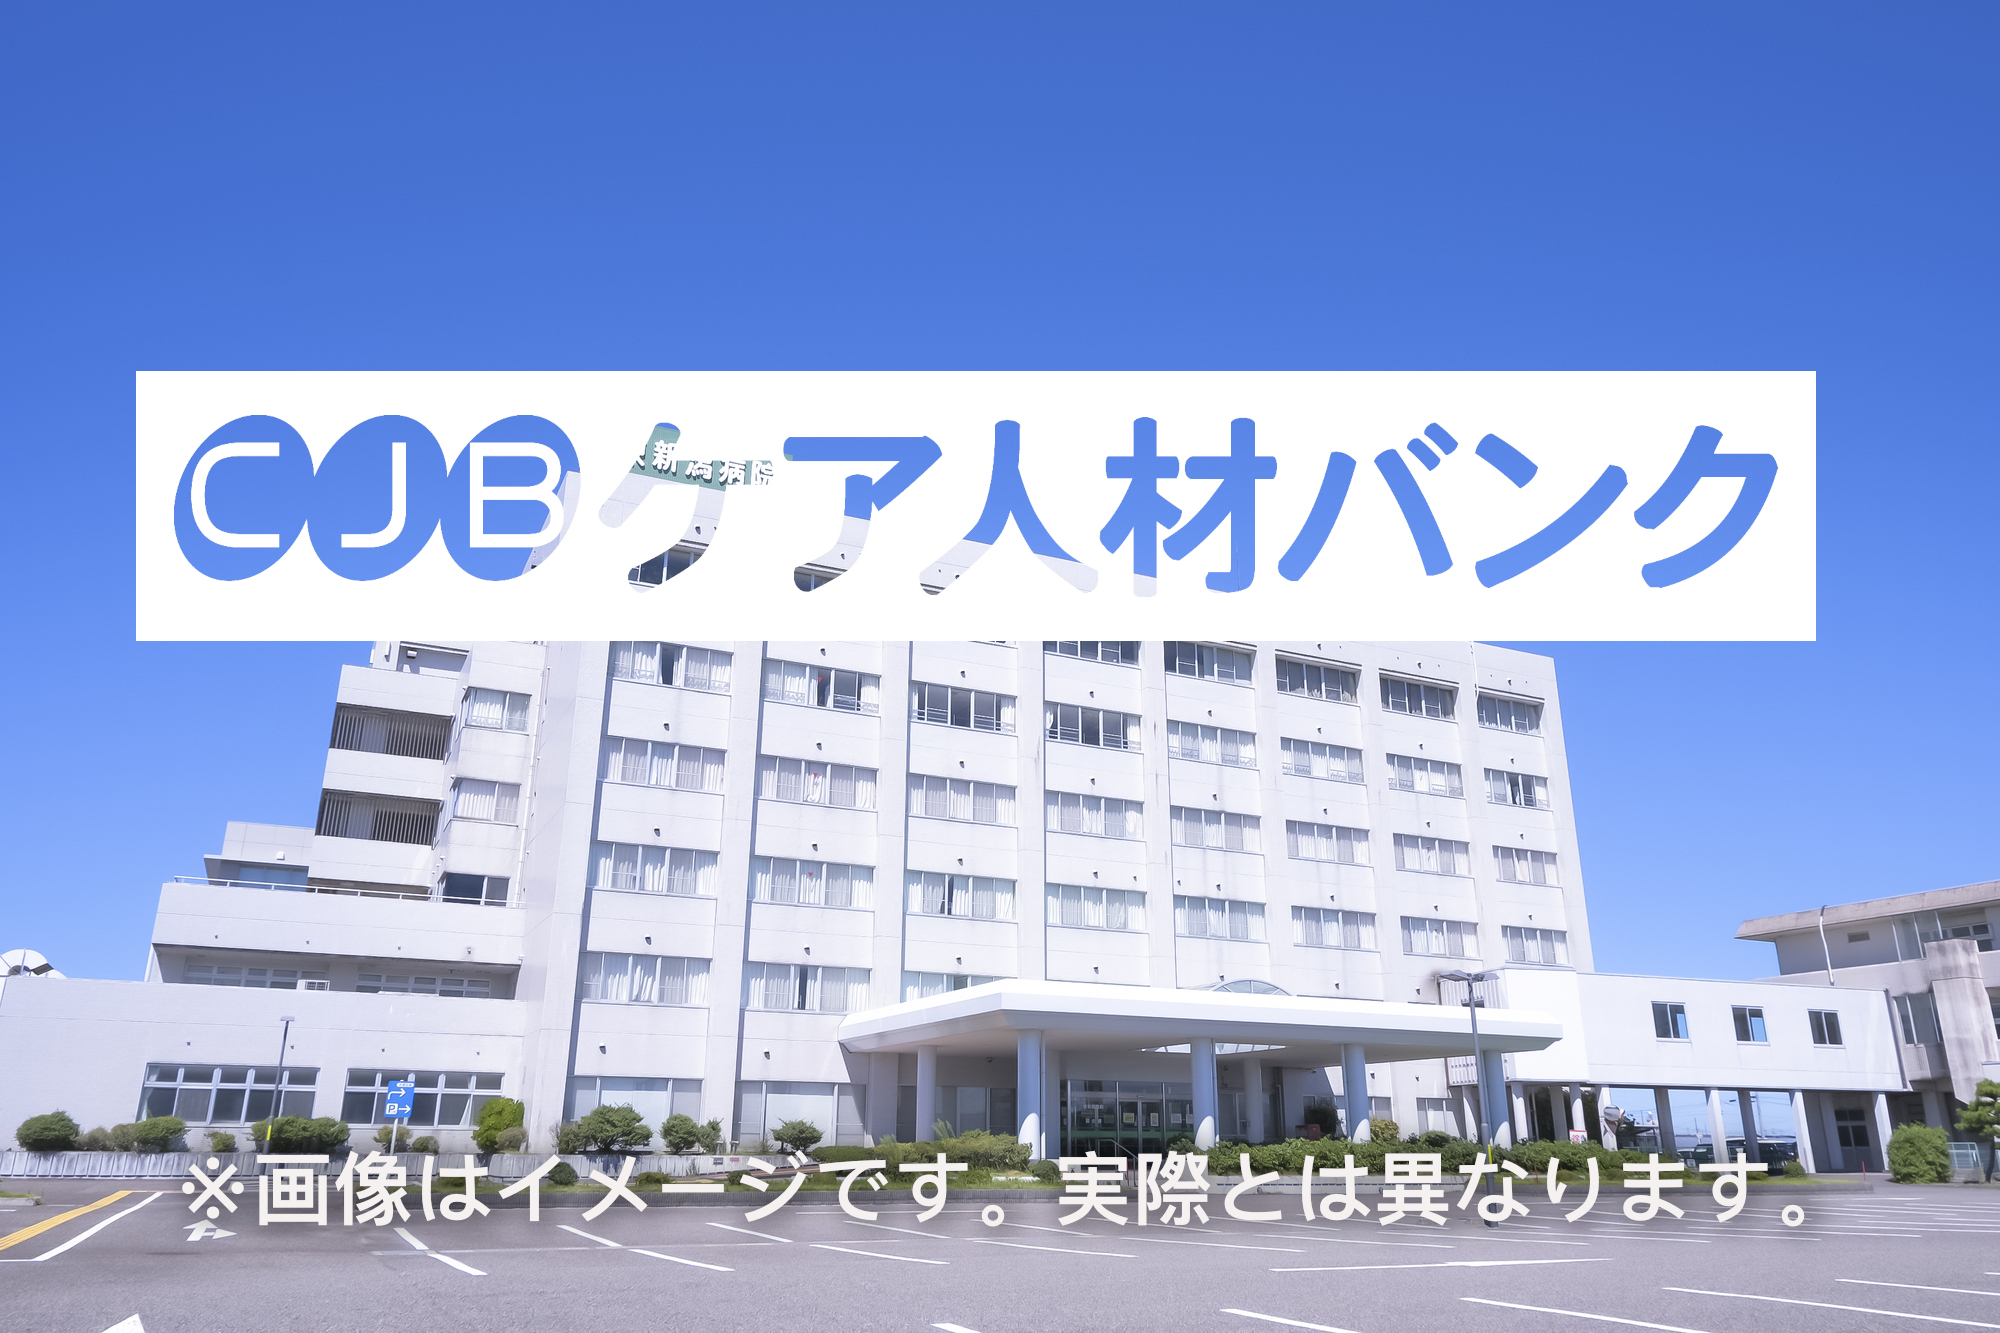 副島整形外科病院 のイメージ画像